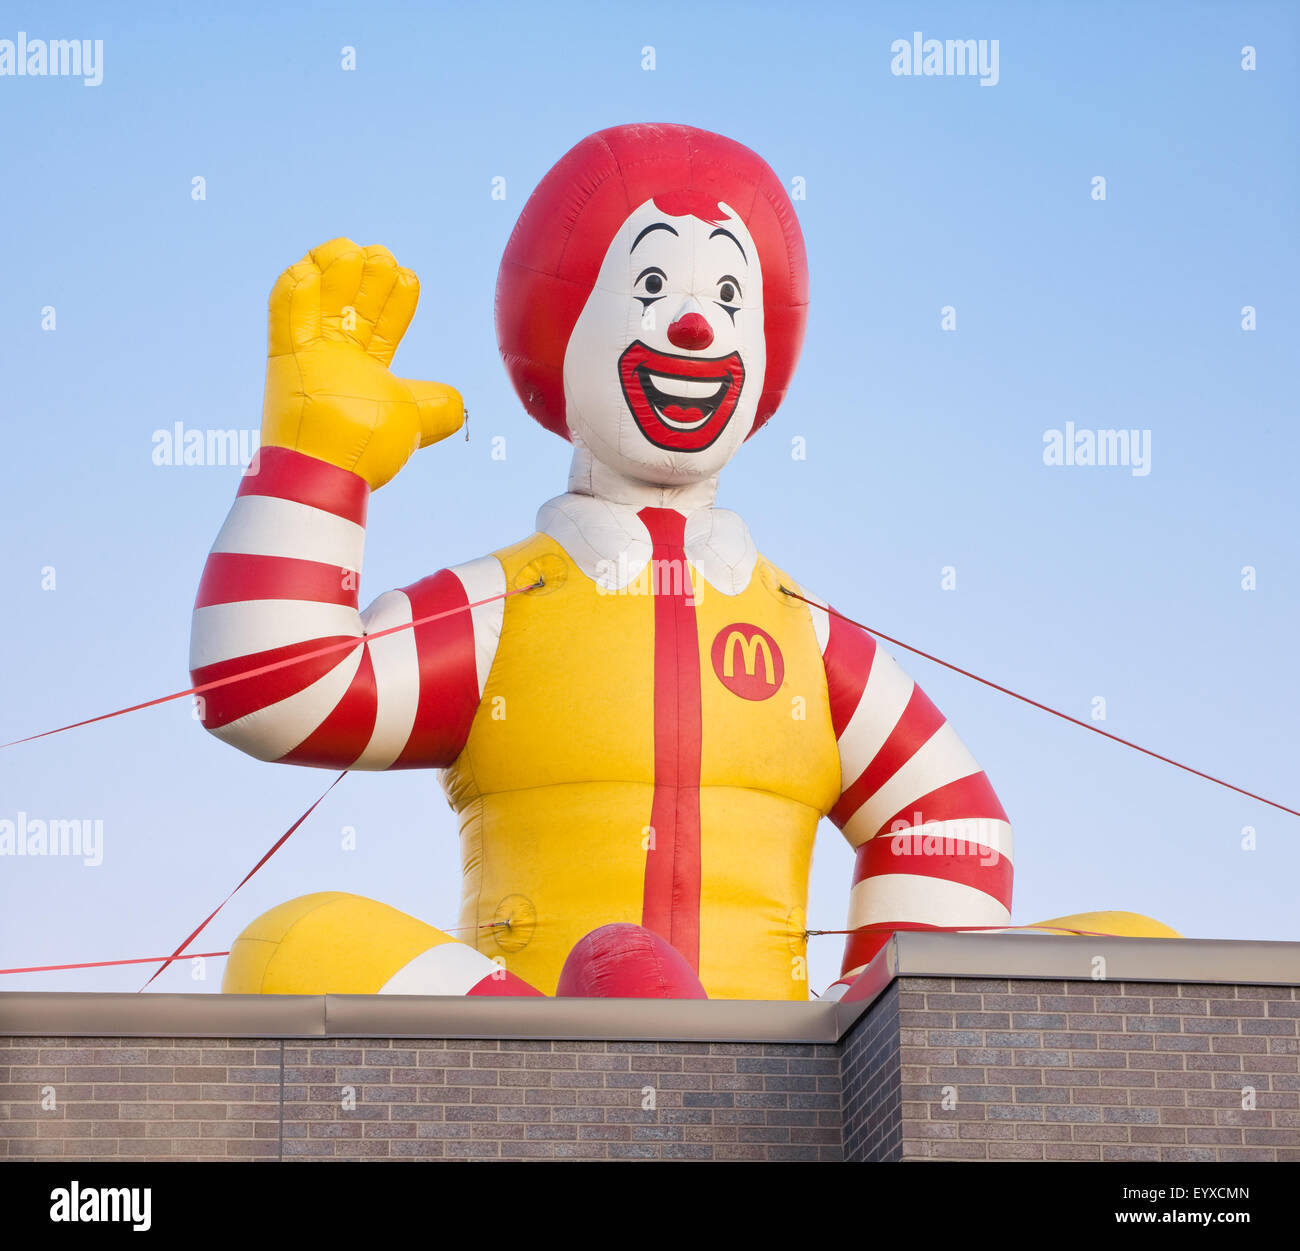 DARTMOUTH, Canada - Agosto 02, 2015: Ronald McDonald gommone sul tetto. Ronald McDonald è un personaggio clown ed è il prim Foto Stock